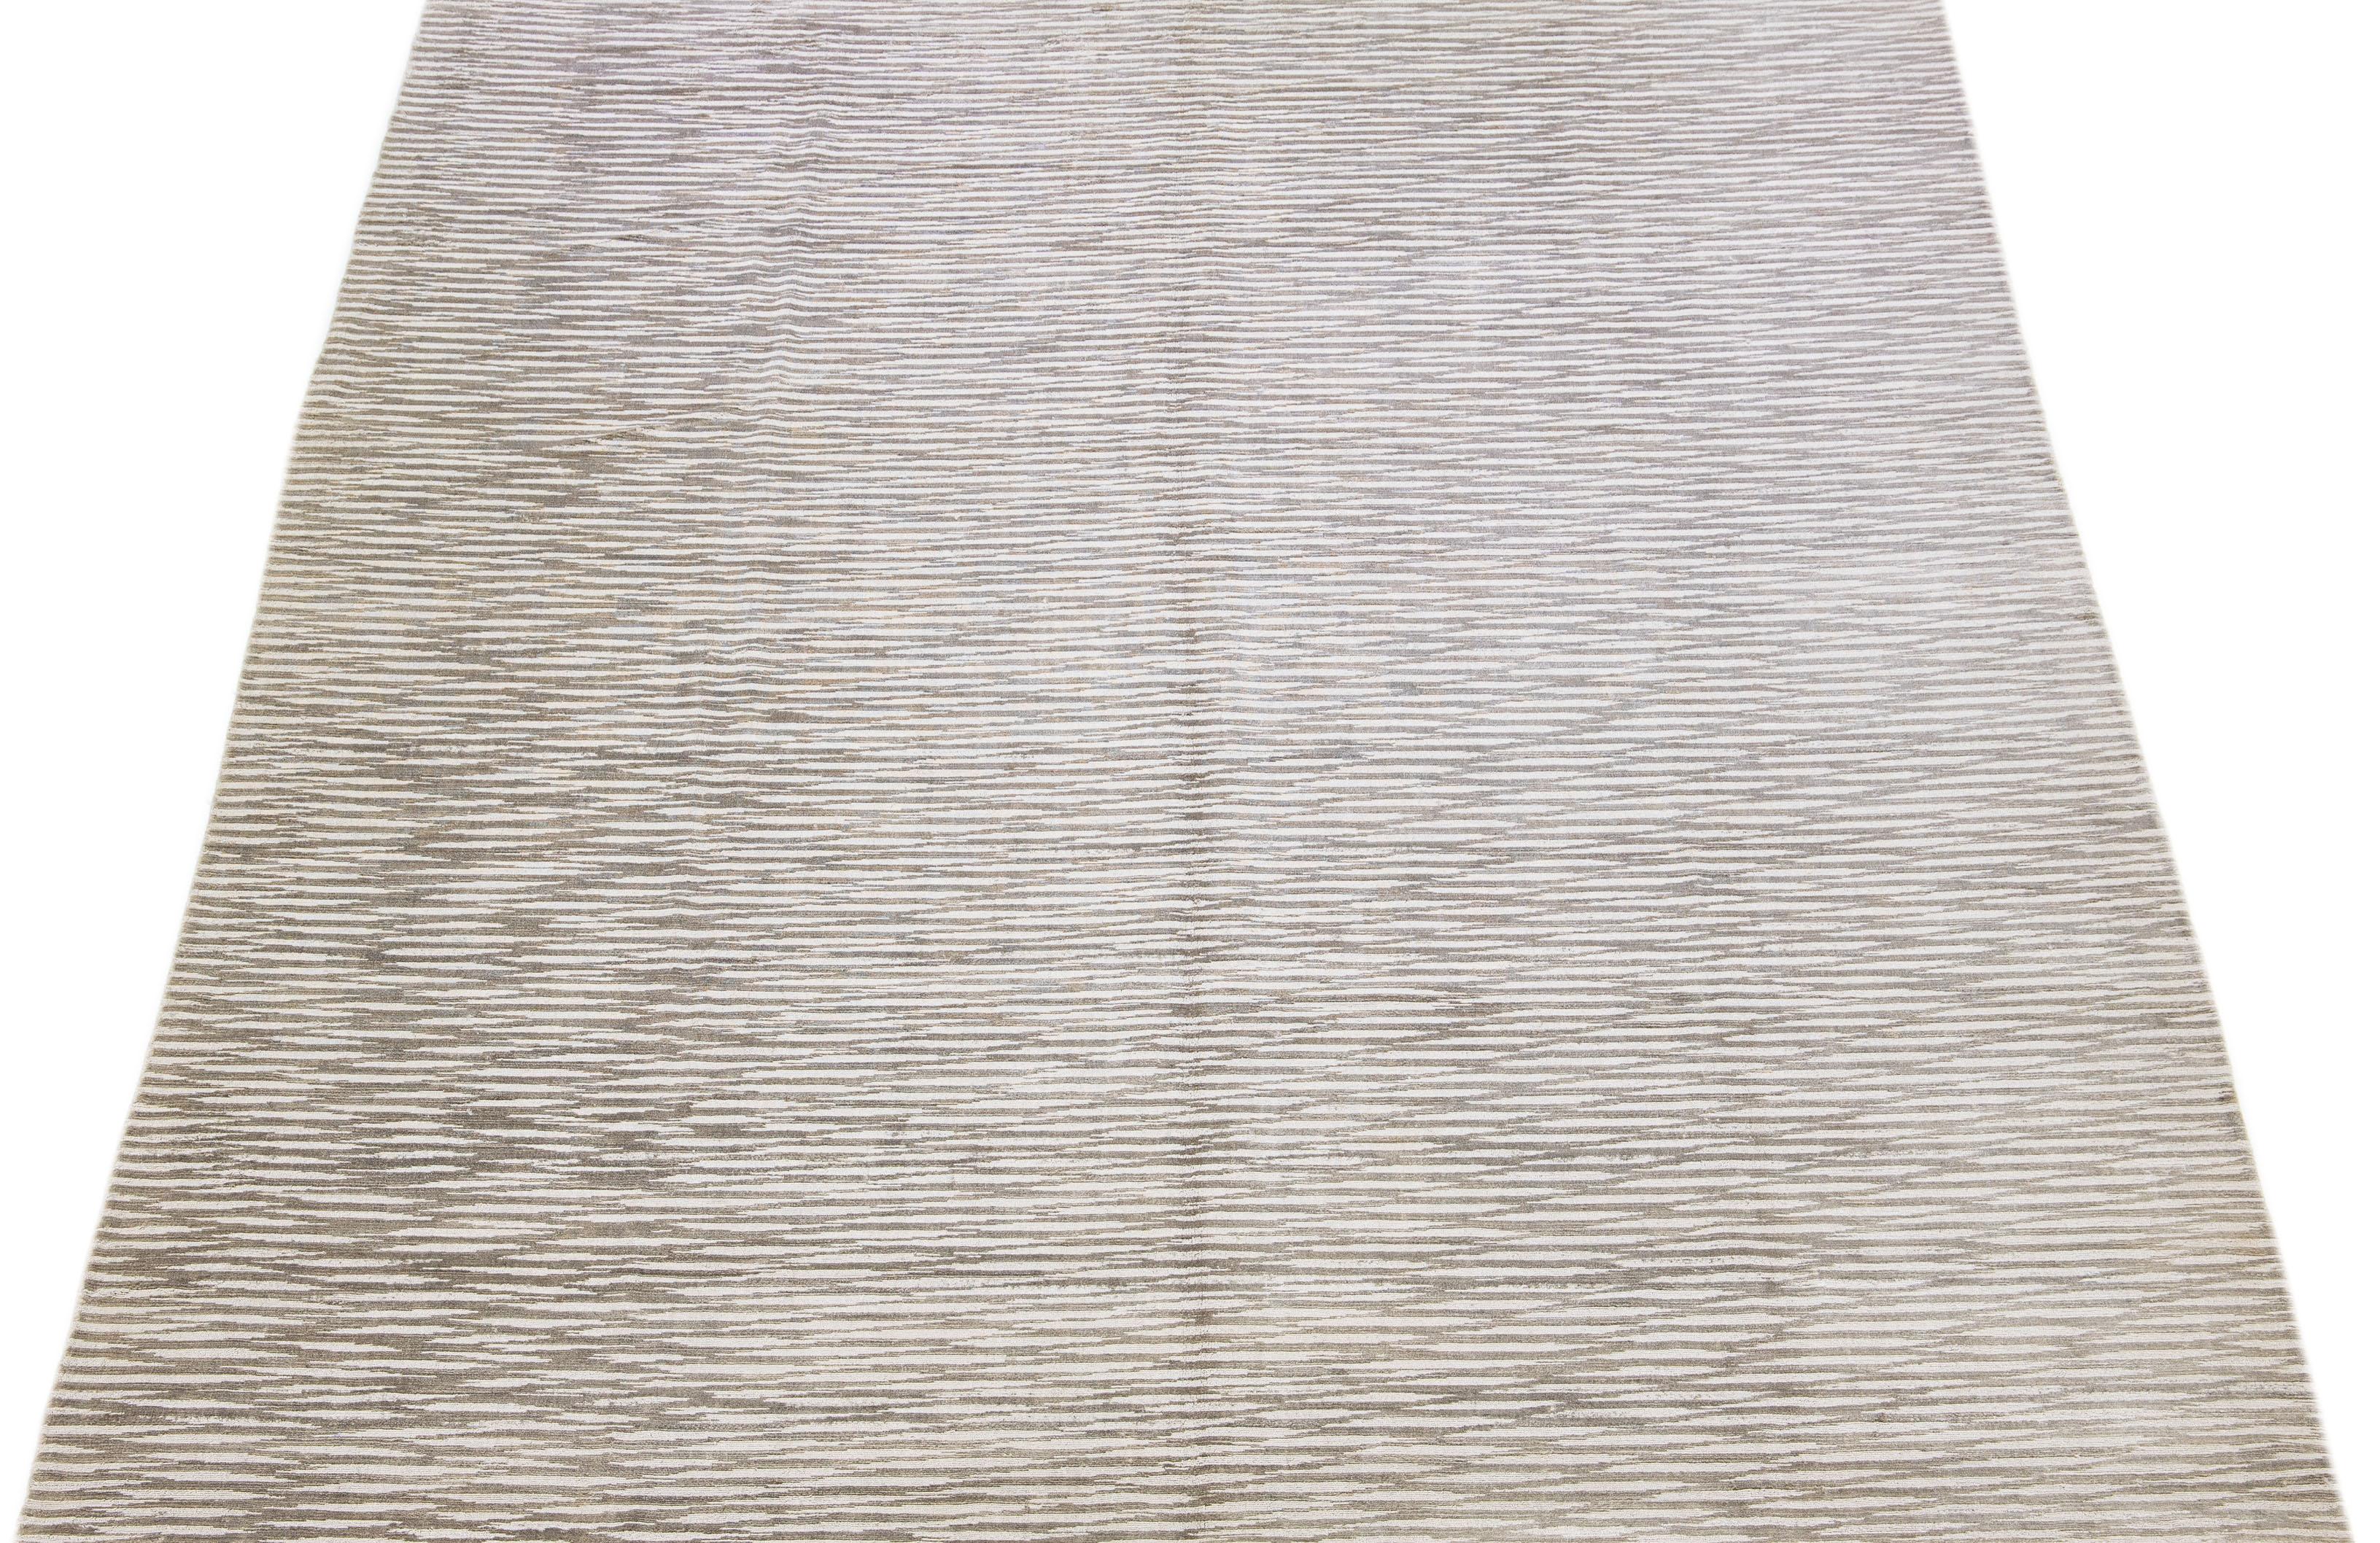 Dieser exquisite zeitgenössische Teppich aus Wolle und Seide hat einen auffälligen grauen Untergrund, der mit einem atemberaubenden geometrischen Muster verziert ist, das anmutig von einem Ende zum anderen fließt.

Dieser Teppich misst 9'11